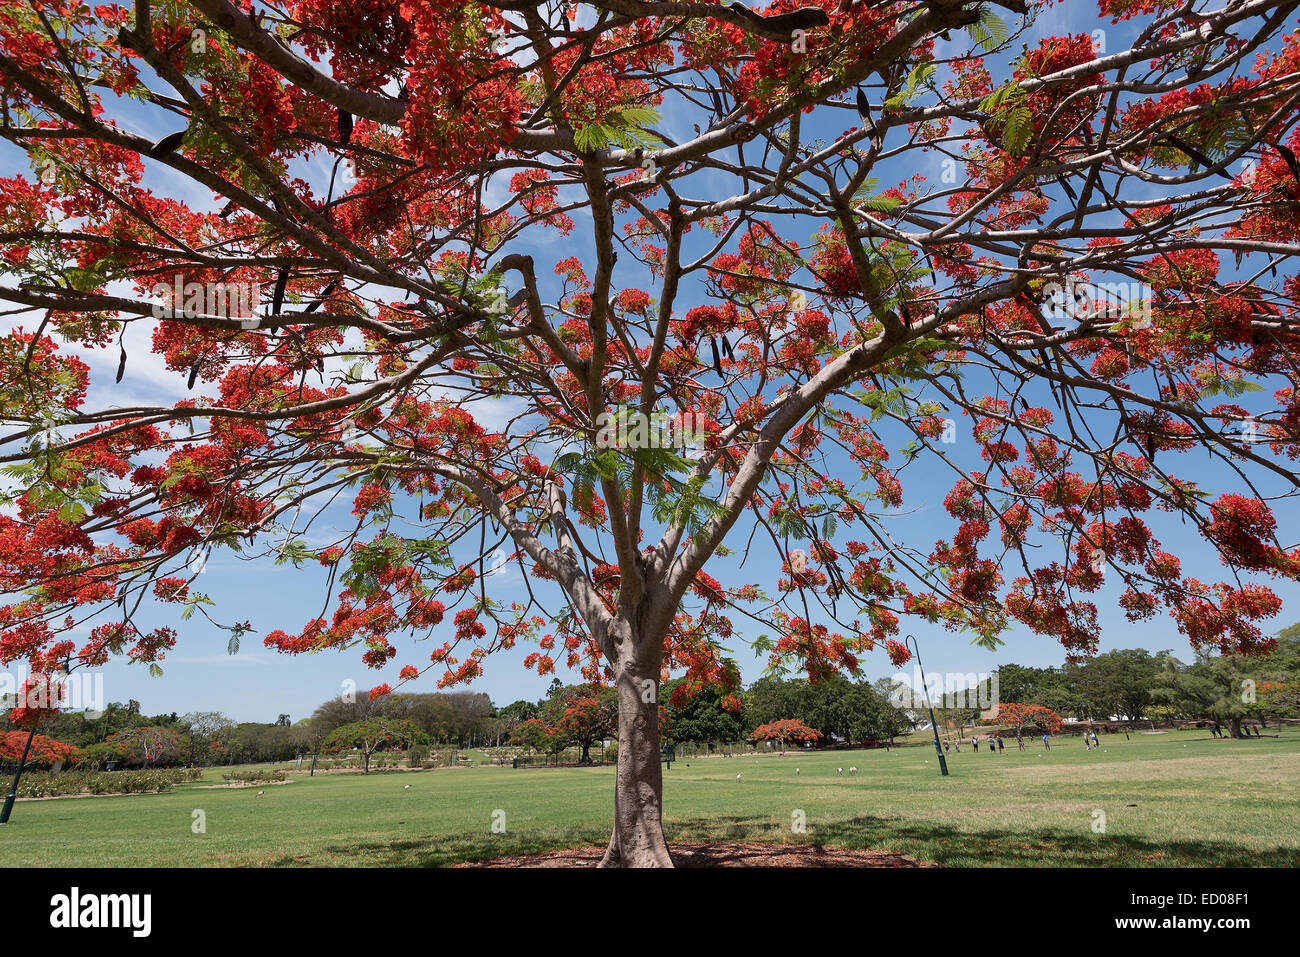 A Delonix Regia in red bloom in a park in Brisbane, Australia Stock Photo